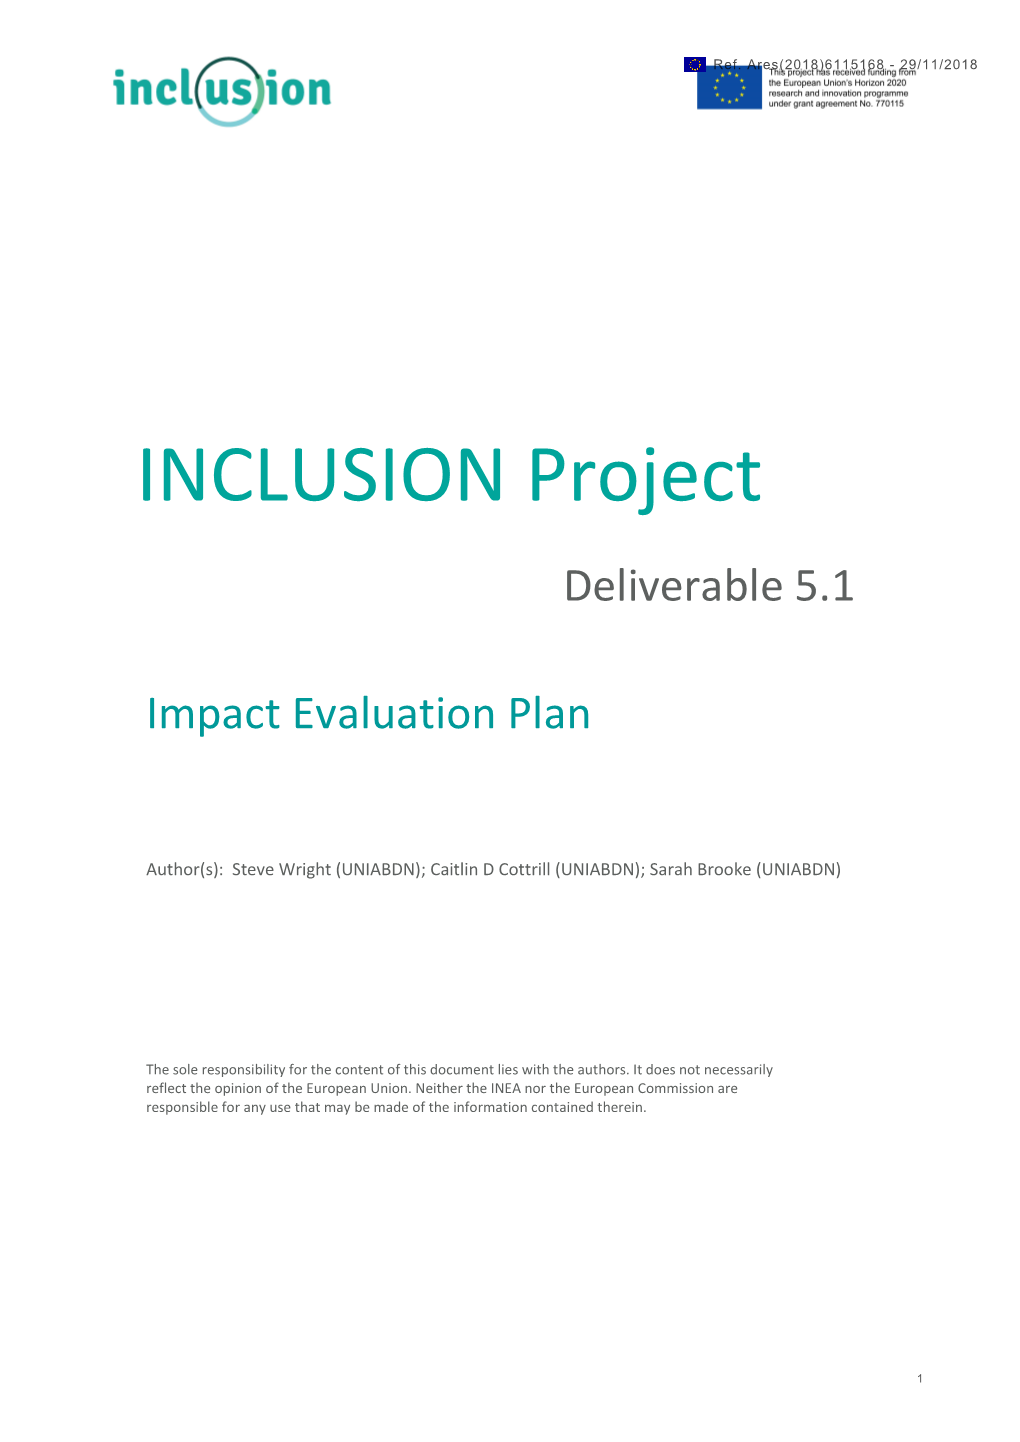 INCLUSION D5.1 Impact Evaluation Plan